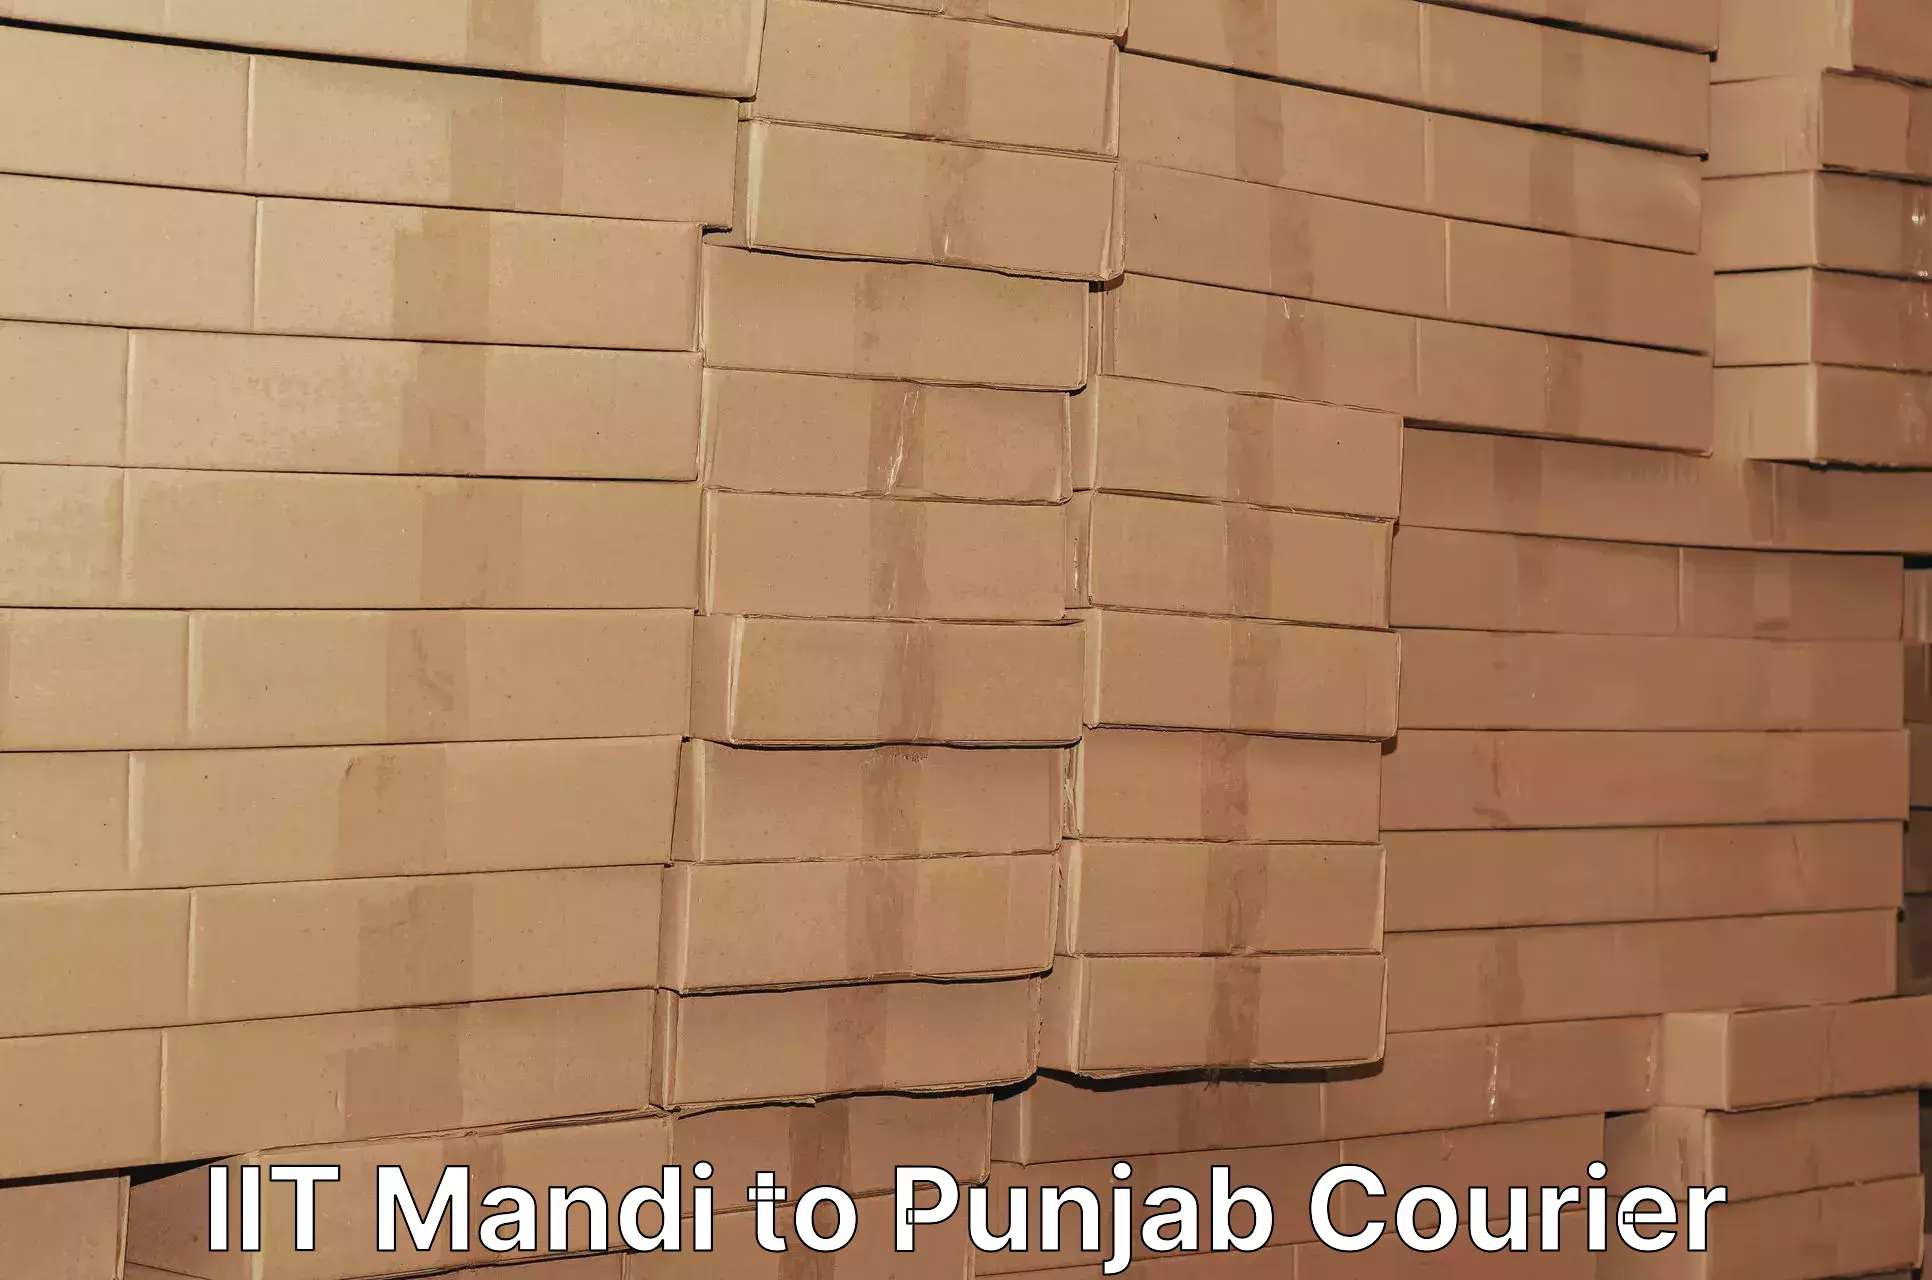 Business shipping needs IIT Mandi to Faridkot